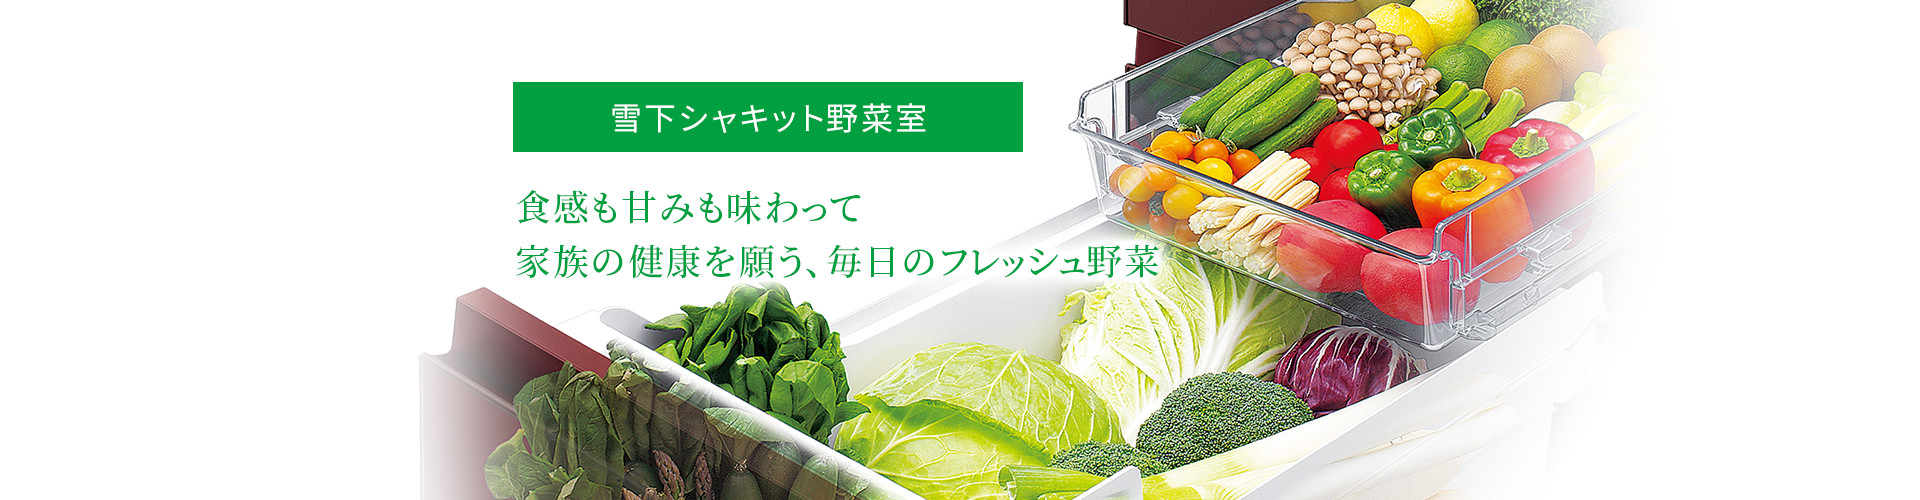 雪下シャキット野菜室|食感も甘みも味わって家族の健康を願う、毎日のフレッシュ野菜。